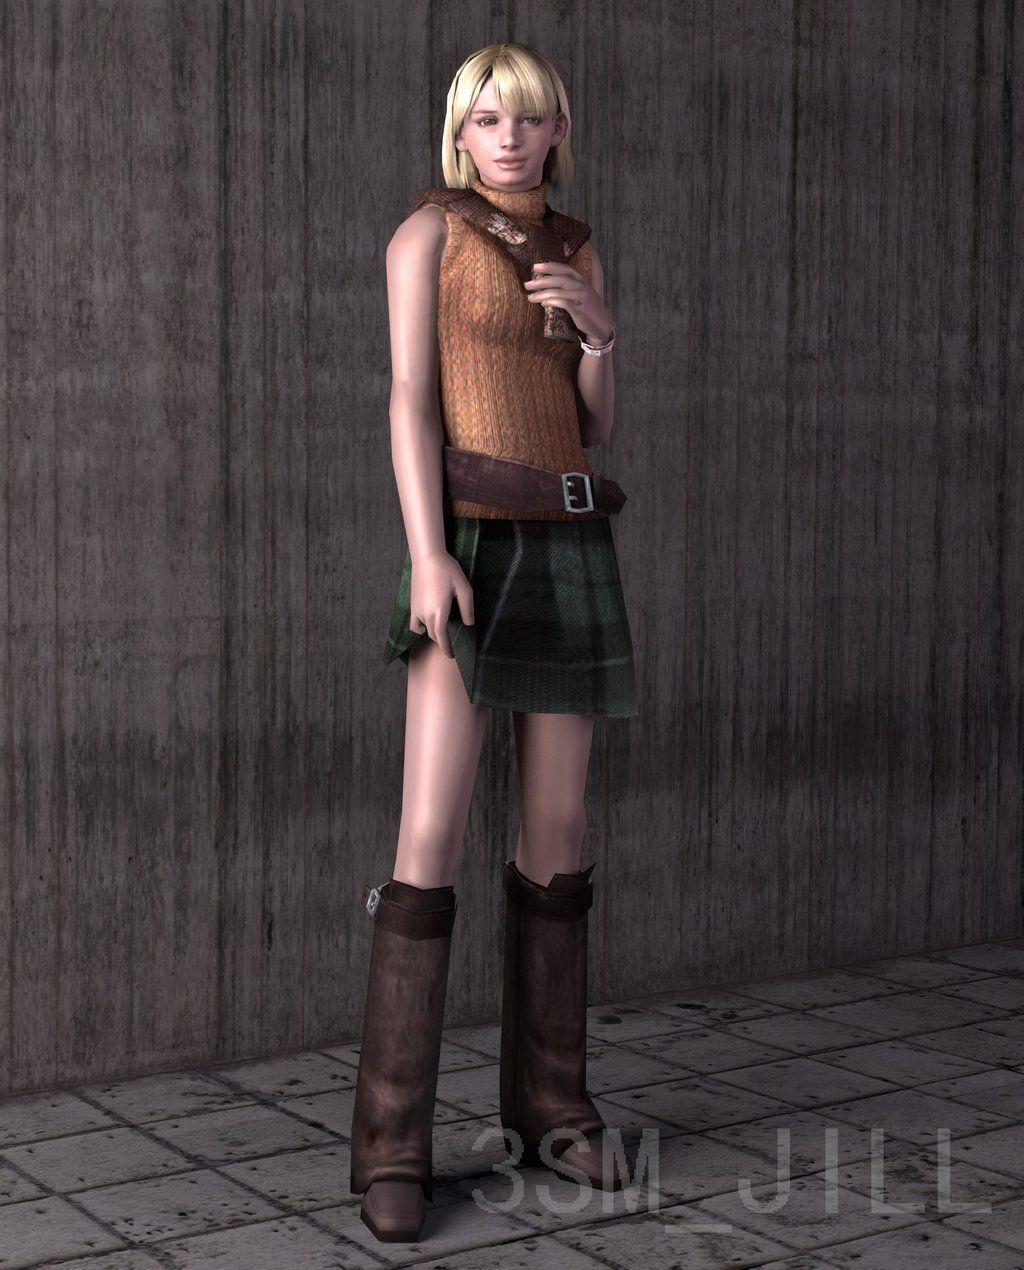 Steam Workshop::Ashley Graham - Resident Evil 4 Wallpaper